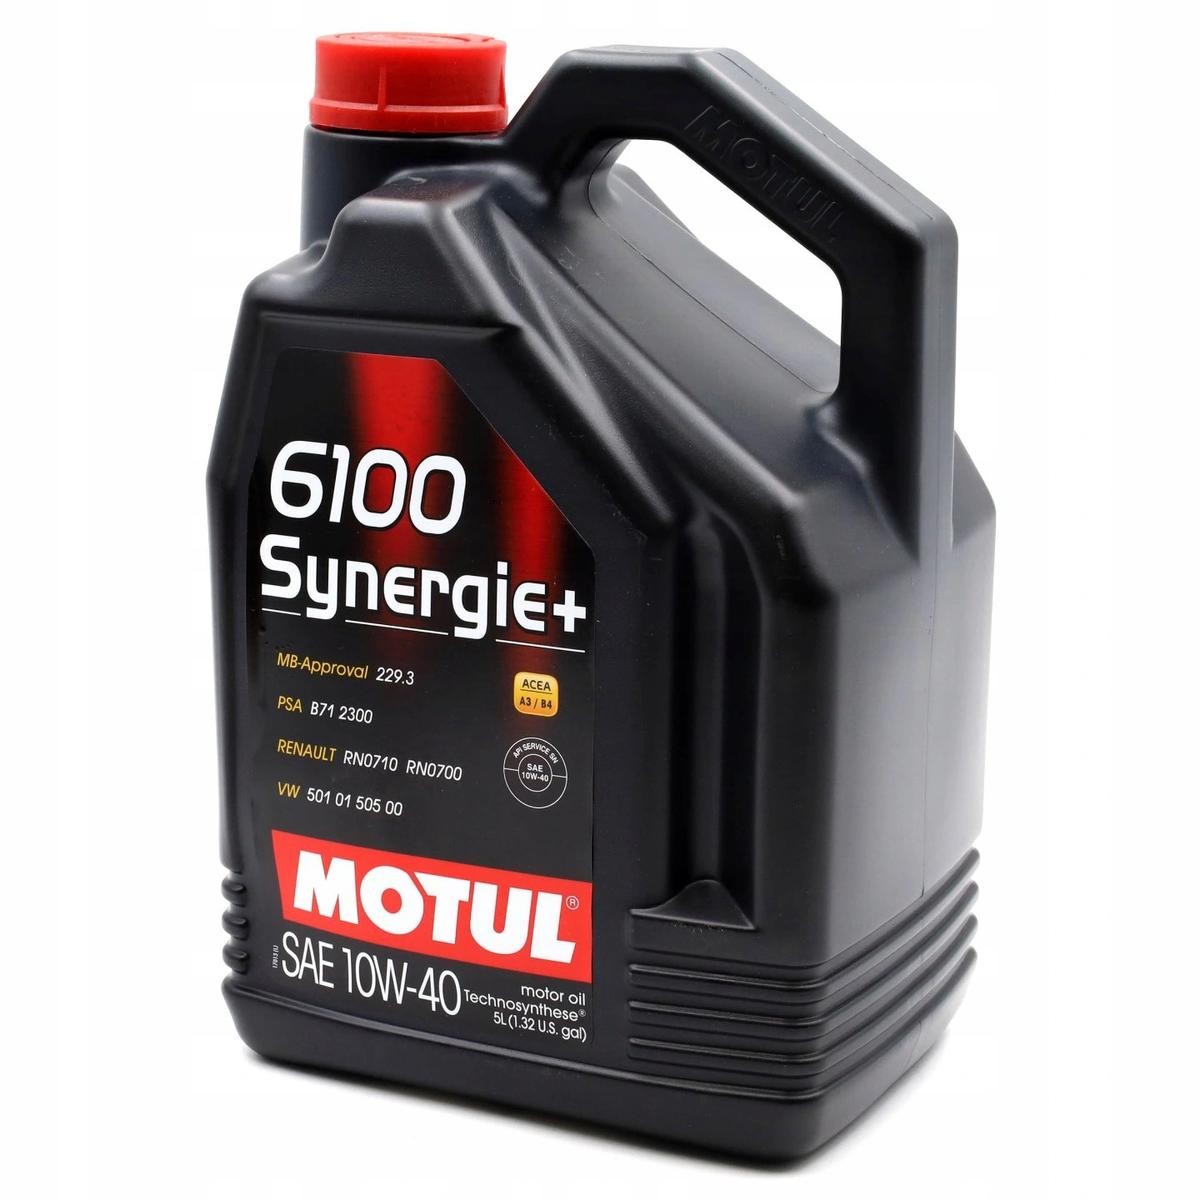 Motorolja MOTUL 108647 - Oljor och vätskor delar till Volvo order